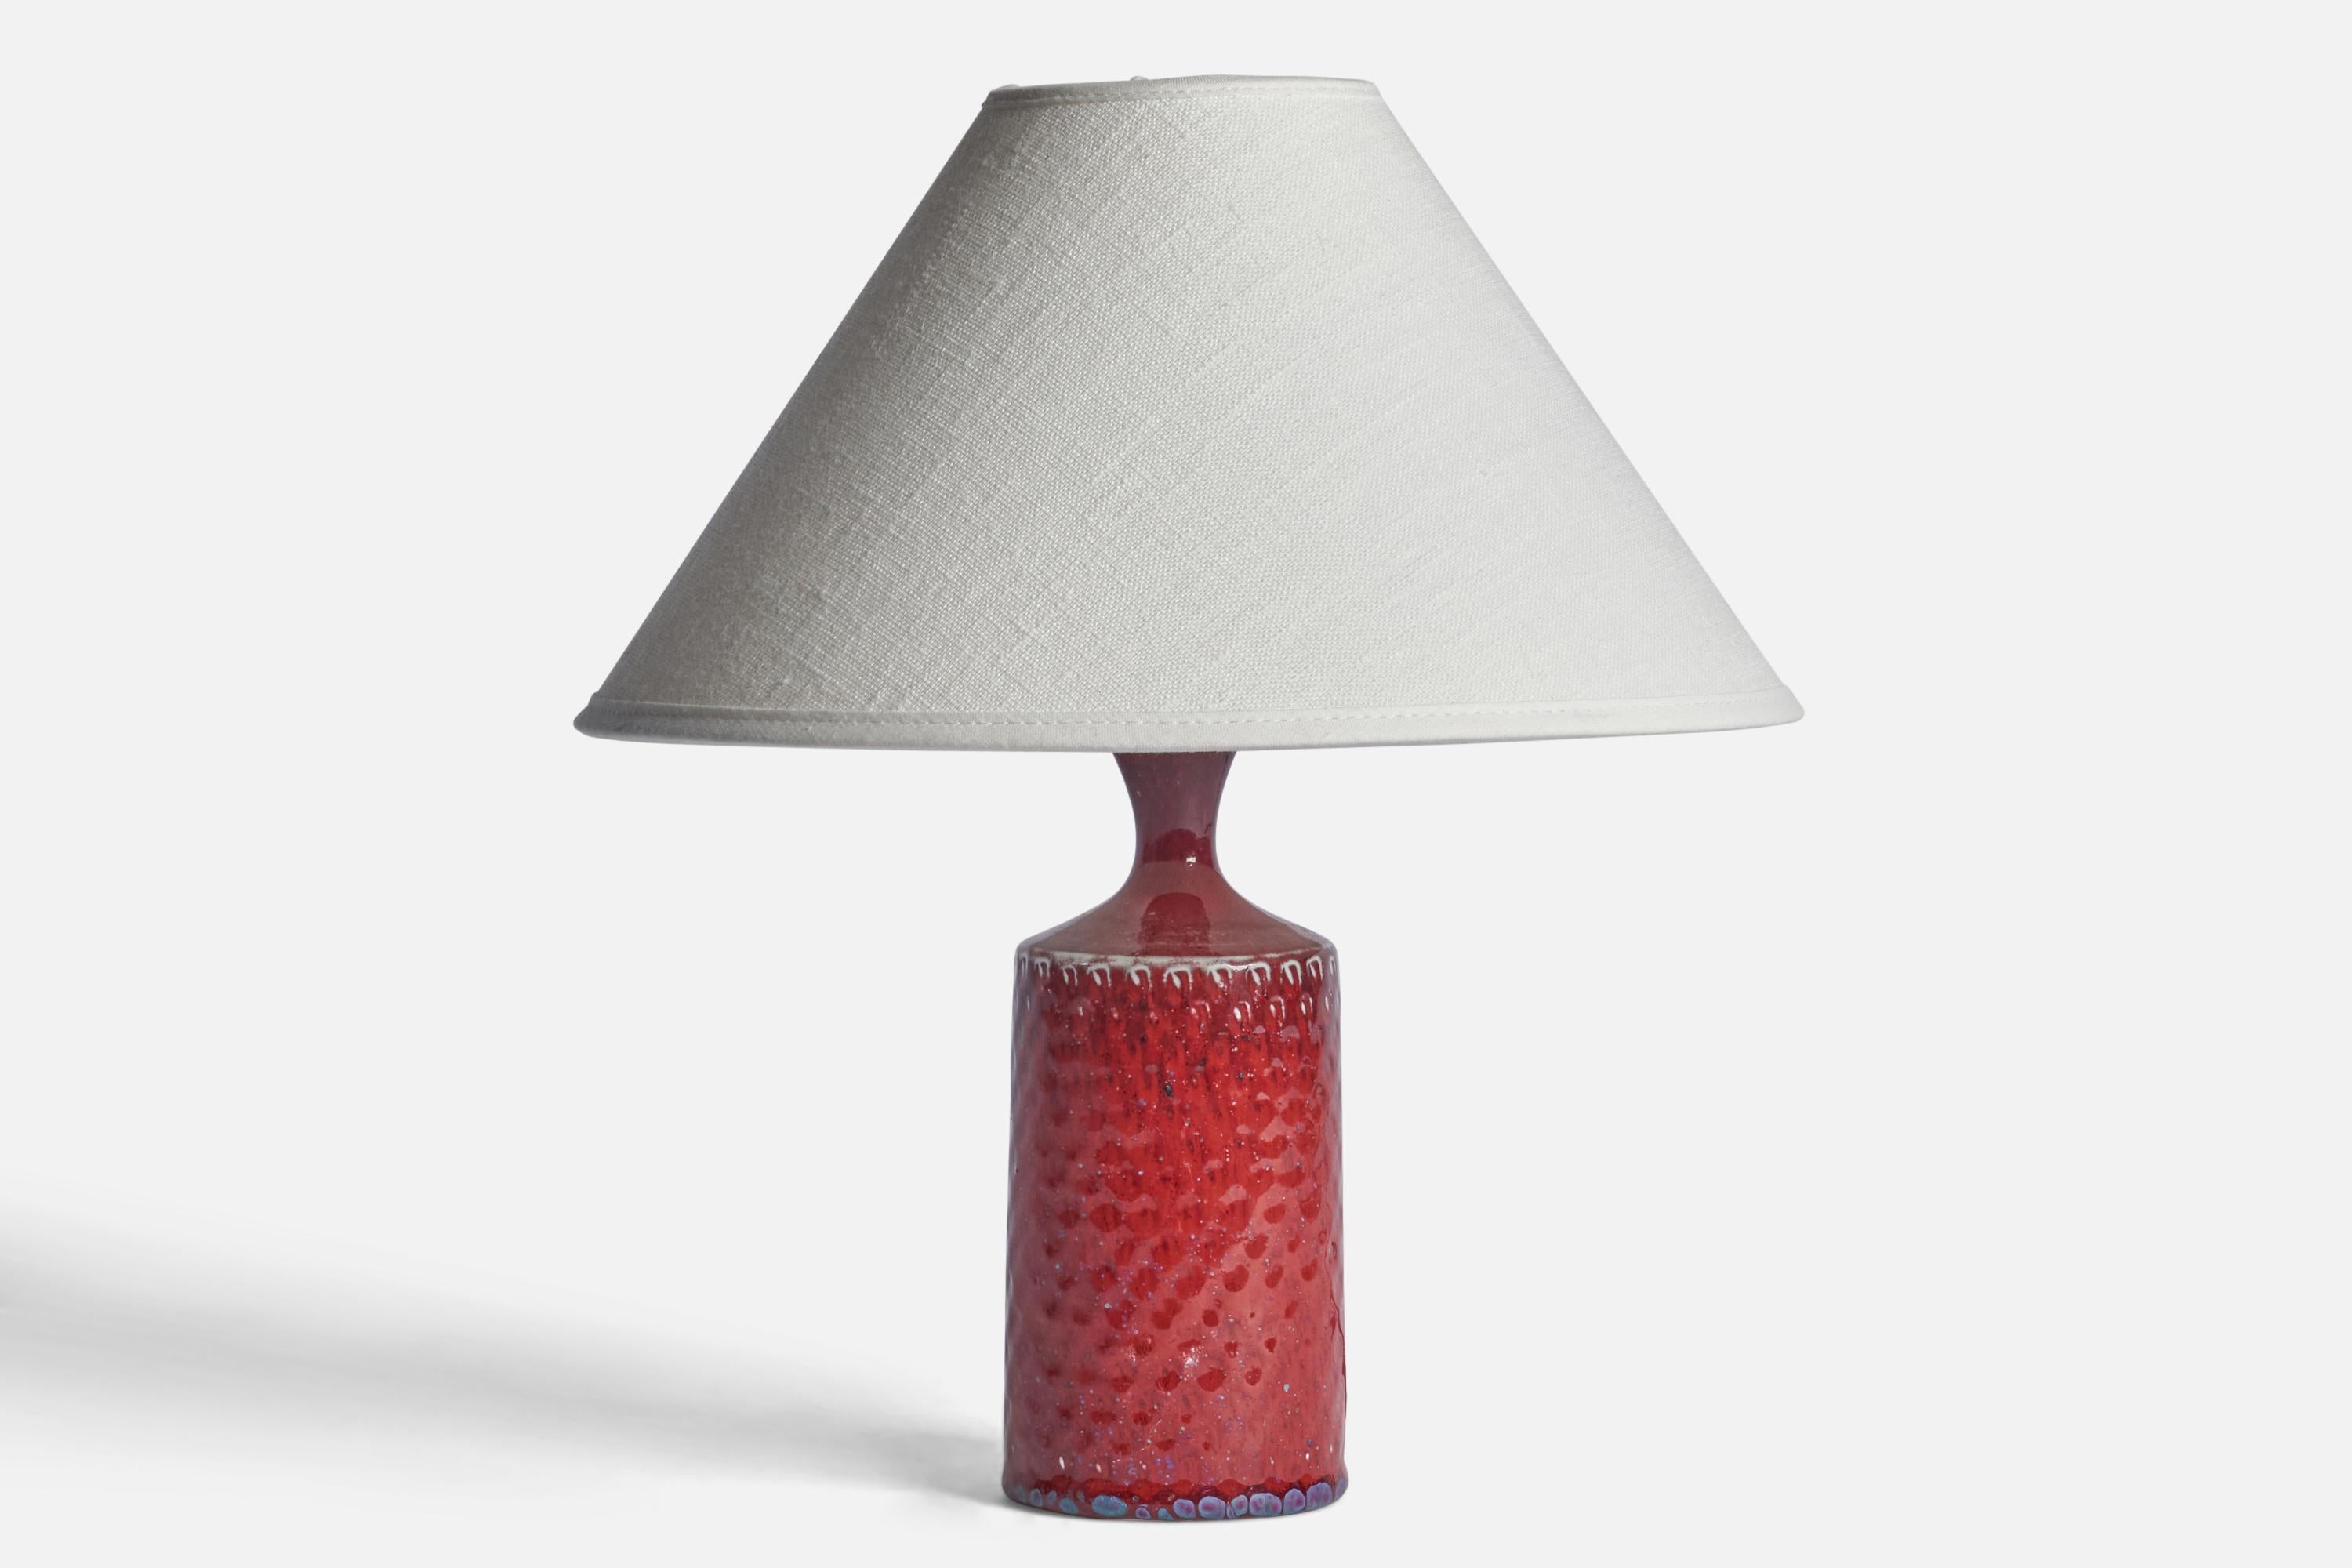 Lampe de table en grès incisé à glaçure rouge, conçue par Stig Lindberg et produite par Gustavsberg, Suède, c. 1950.

Dimensions de la lampe (pouces) : 8.5